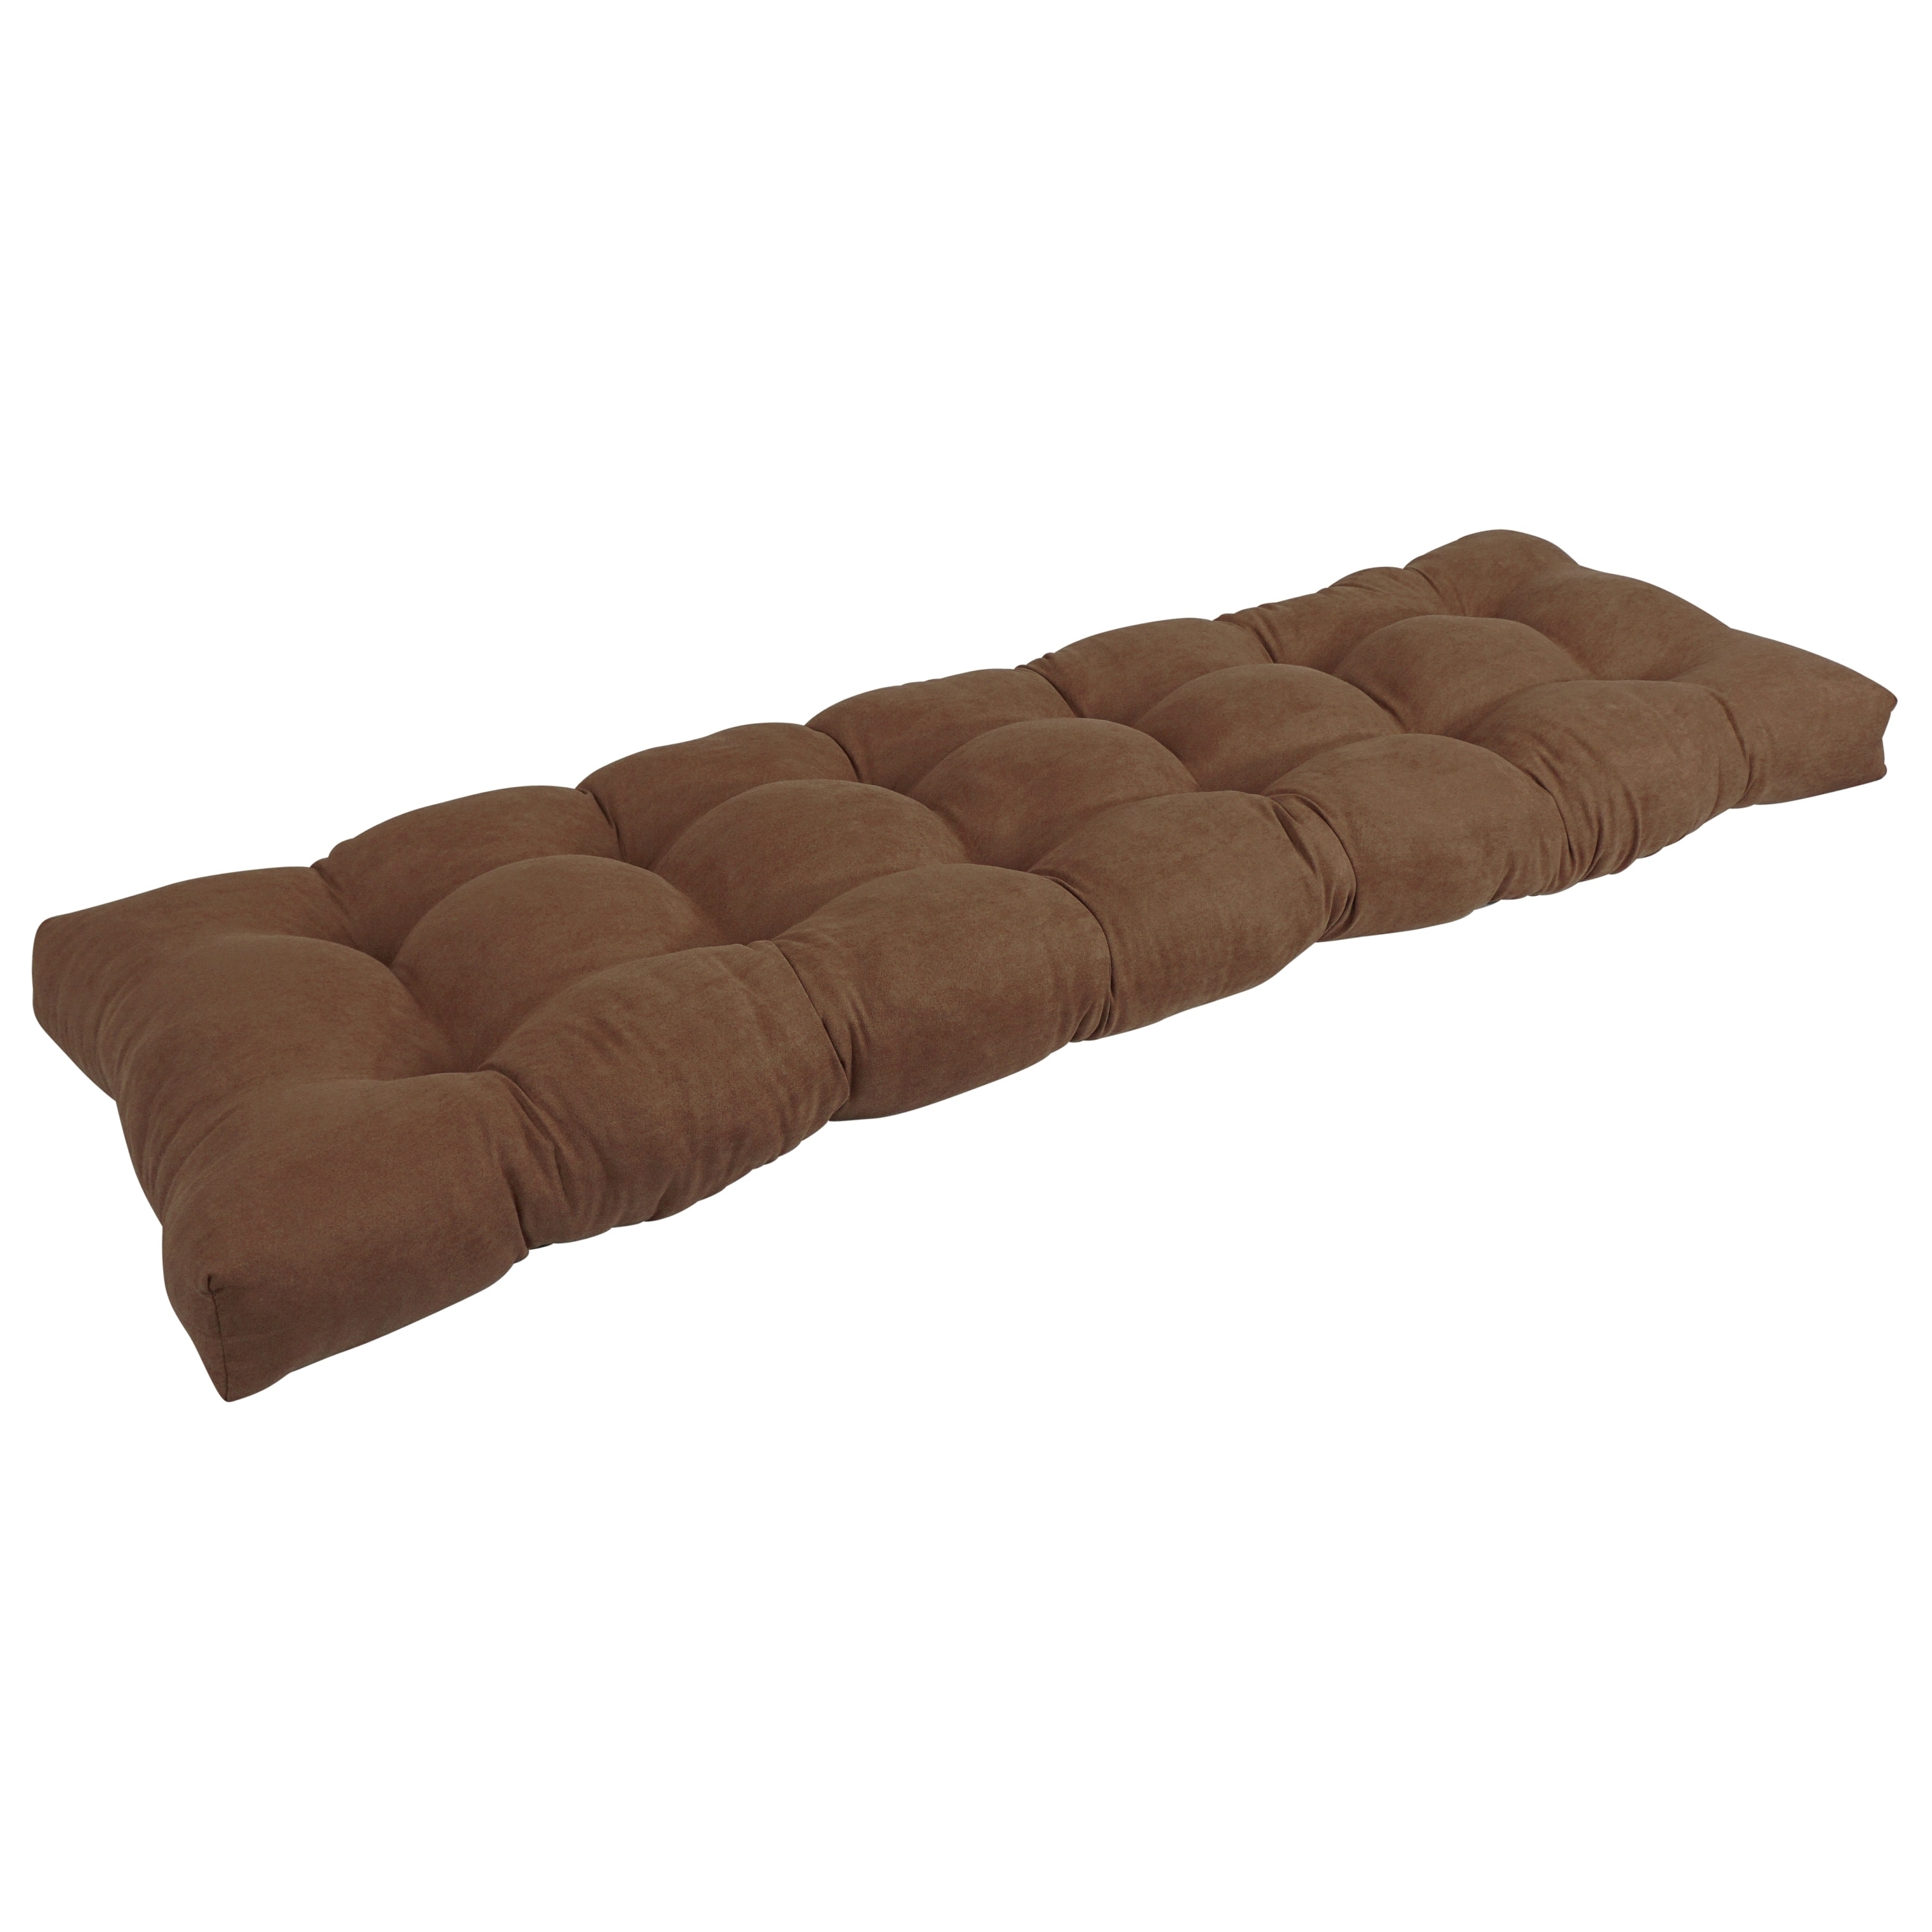 60 X 14 BLACK AND WHITE Buffalo Plaid Tufted Bench Cushion, Seat Cushion,  Farmhouse Cushion, 